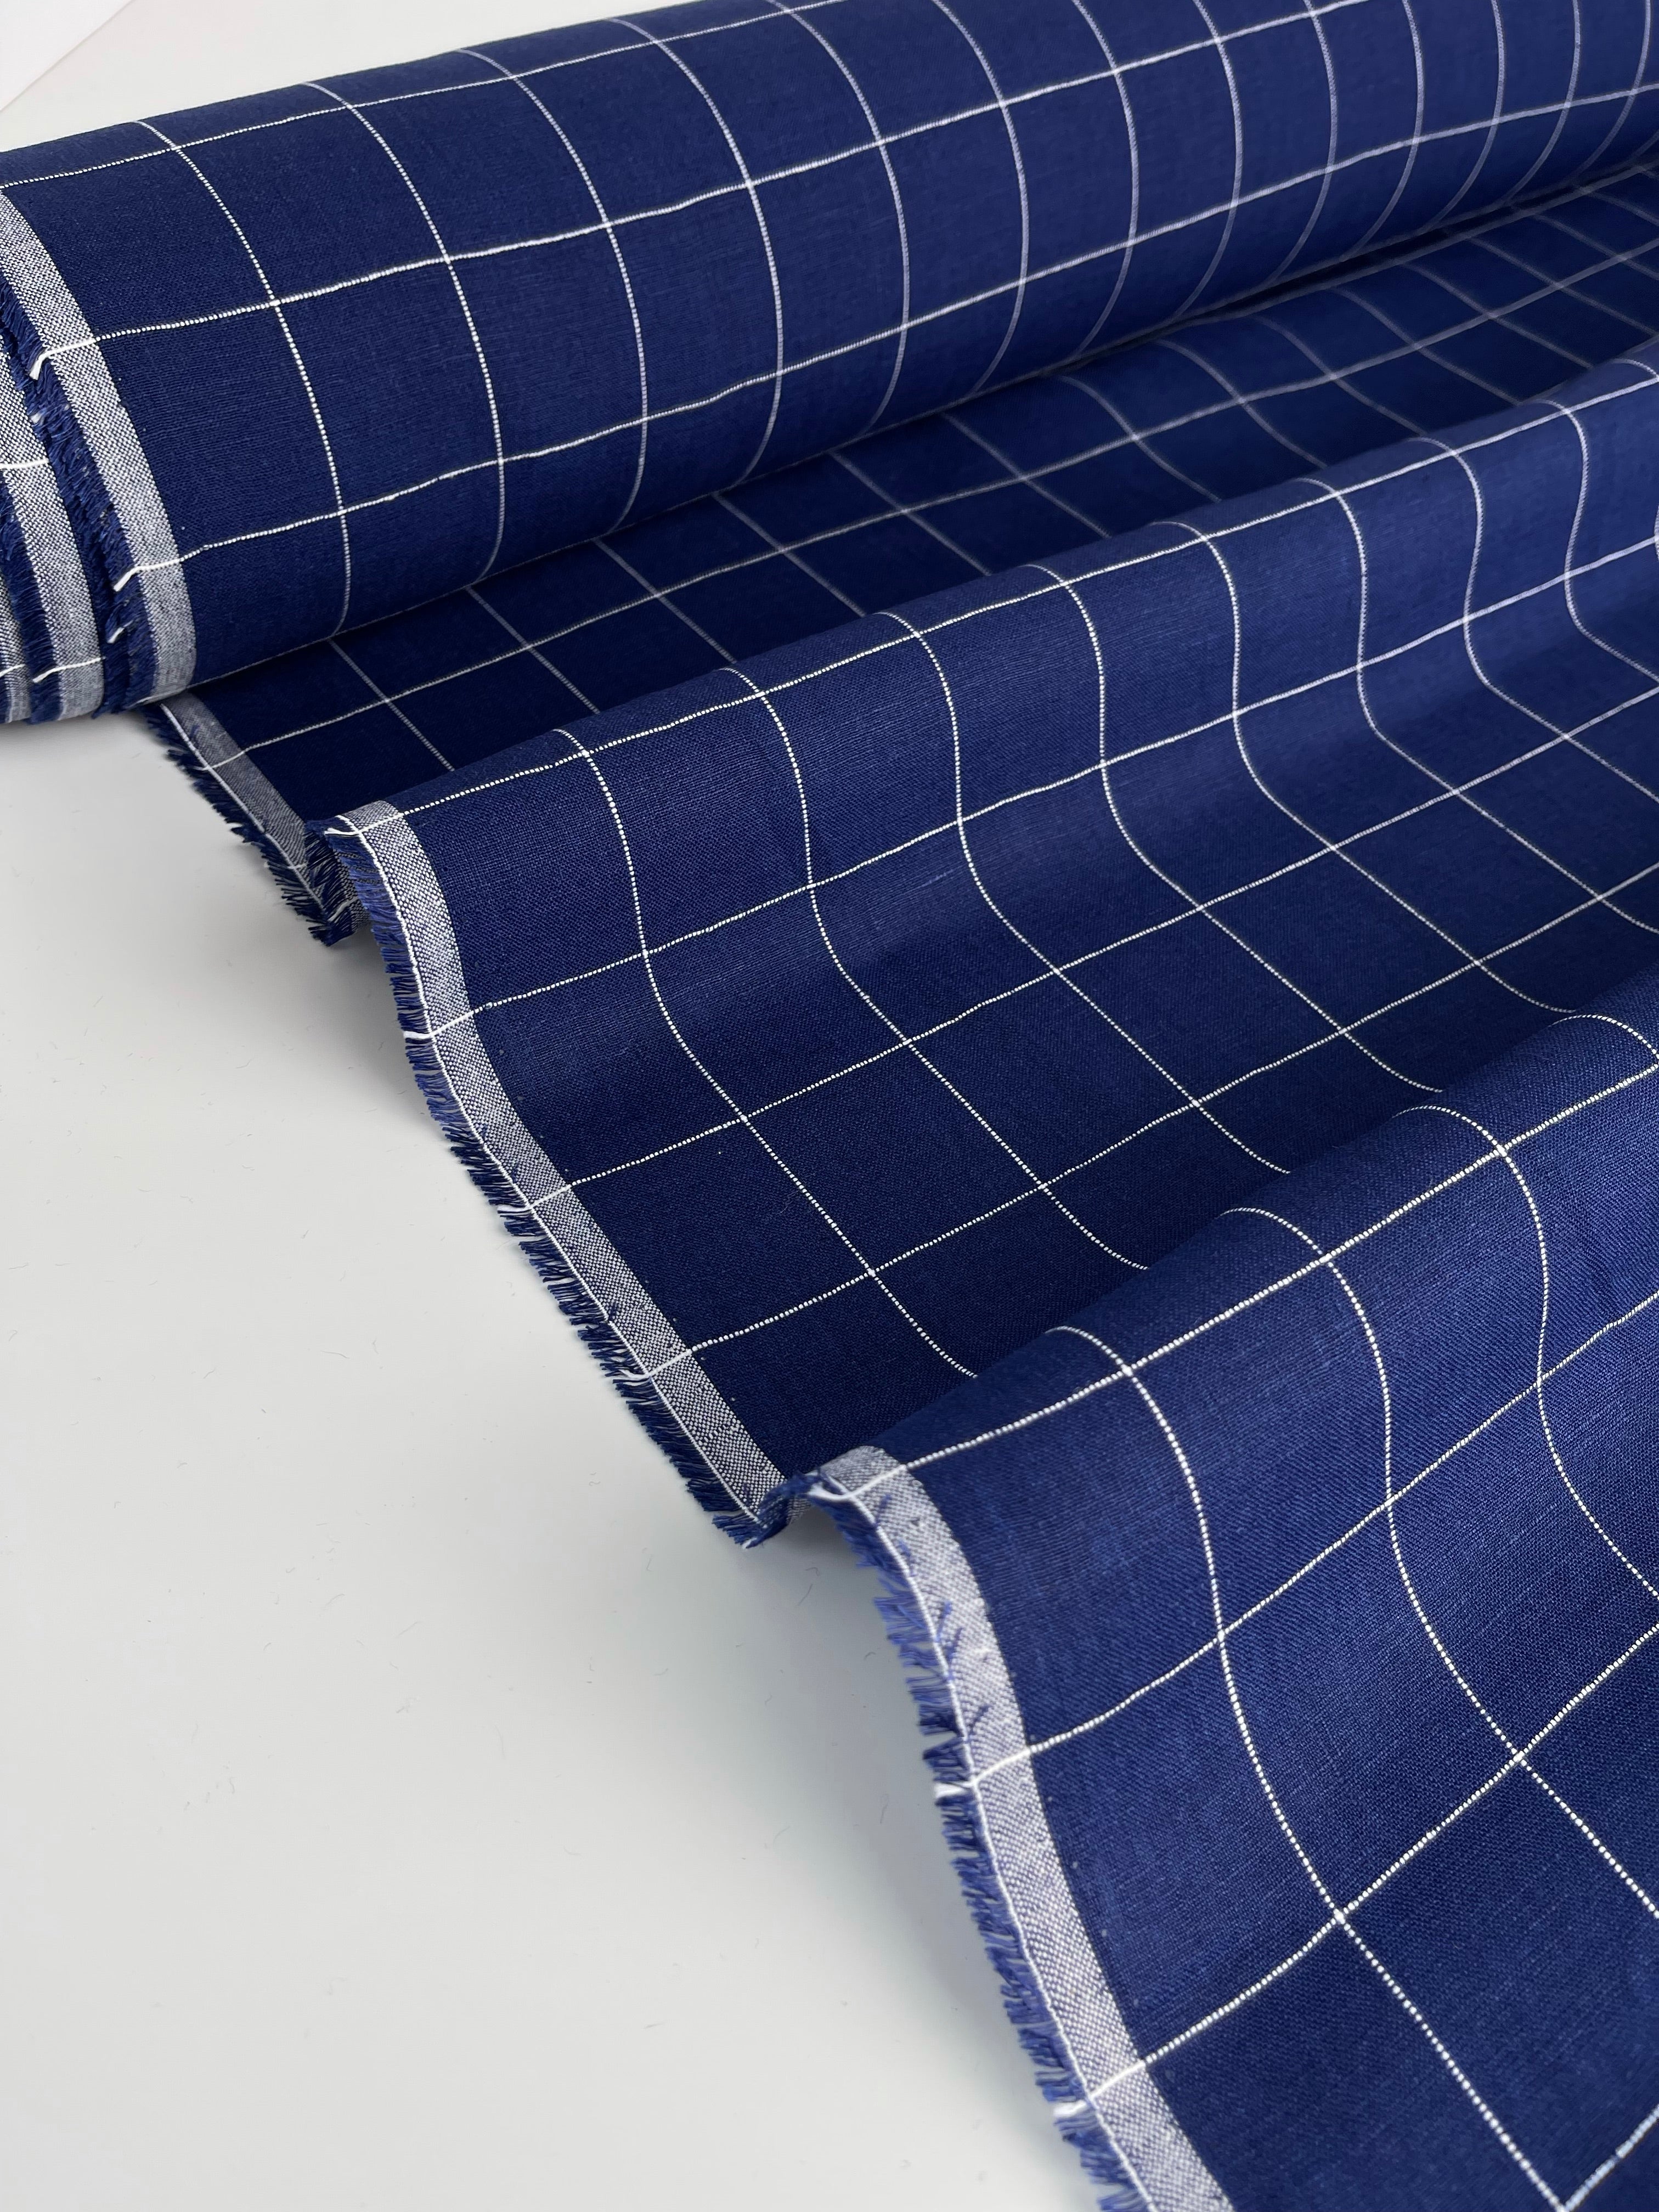 REMNANT 0.67 Metre - Monochrome Checks Cobalt Blue Linen Fabric